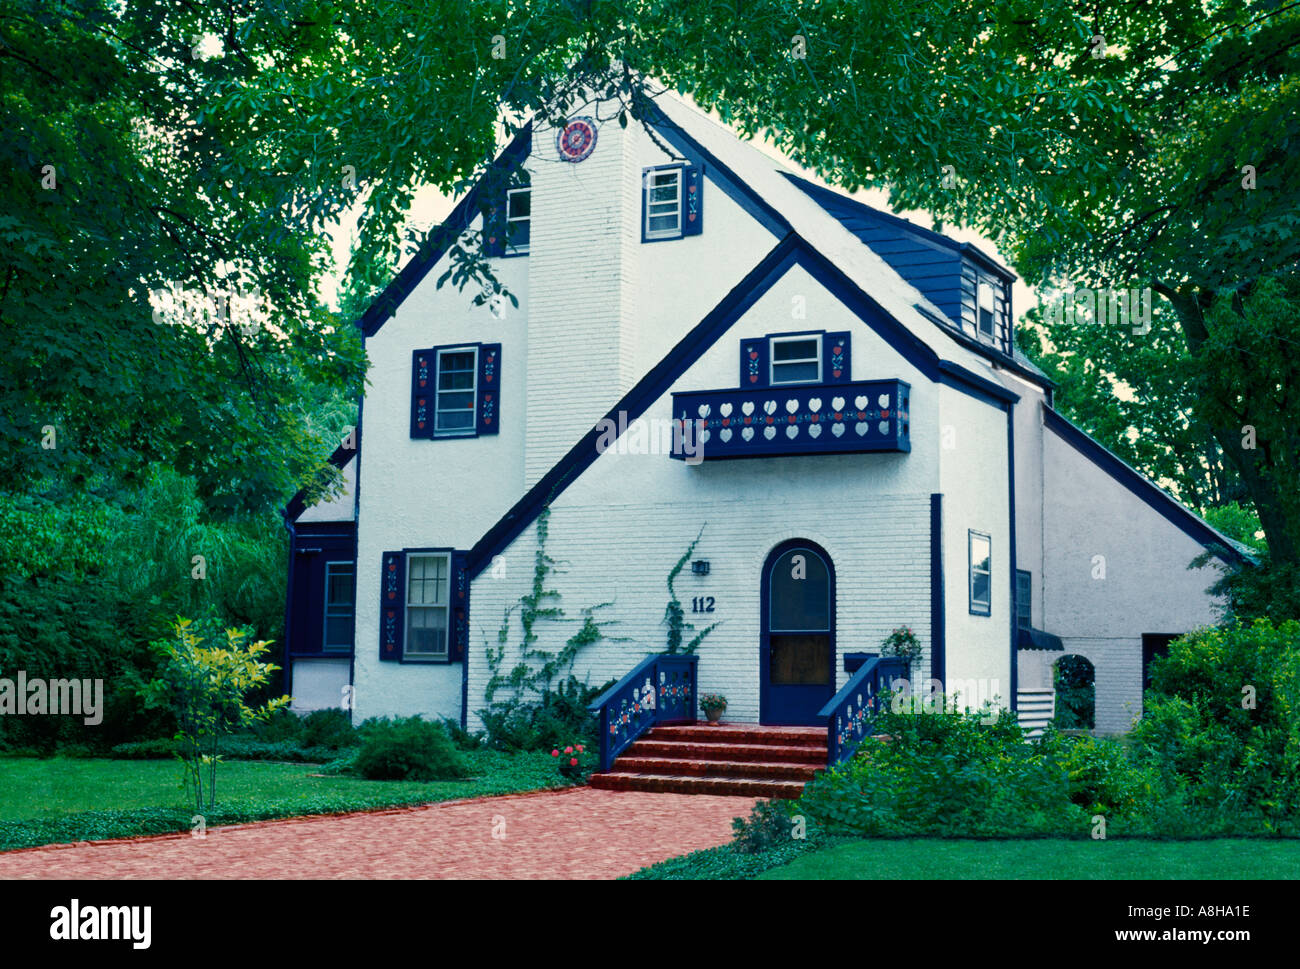 Peint en blanc et brique pittoresque maison de stuc avec garniture bleue et rouge brique California United States of America USA Banque D'Images